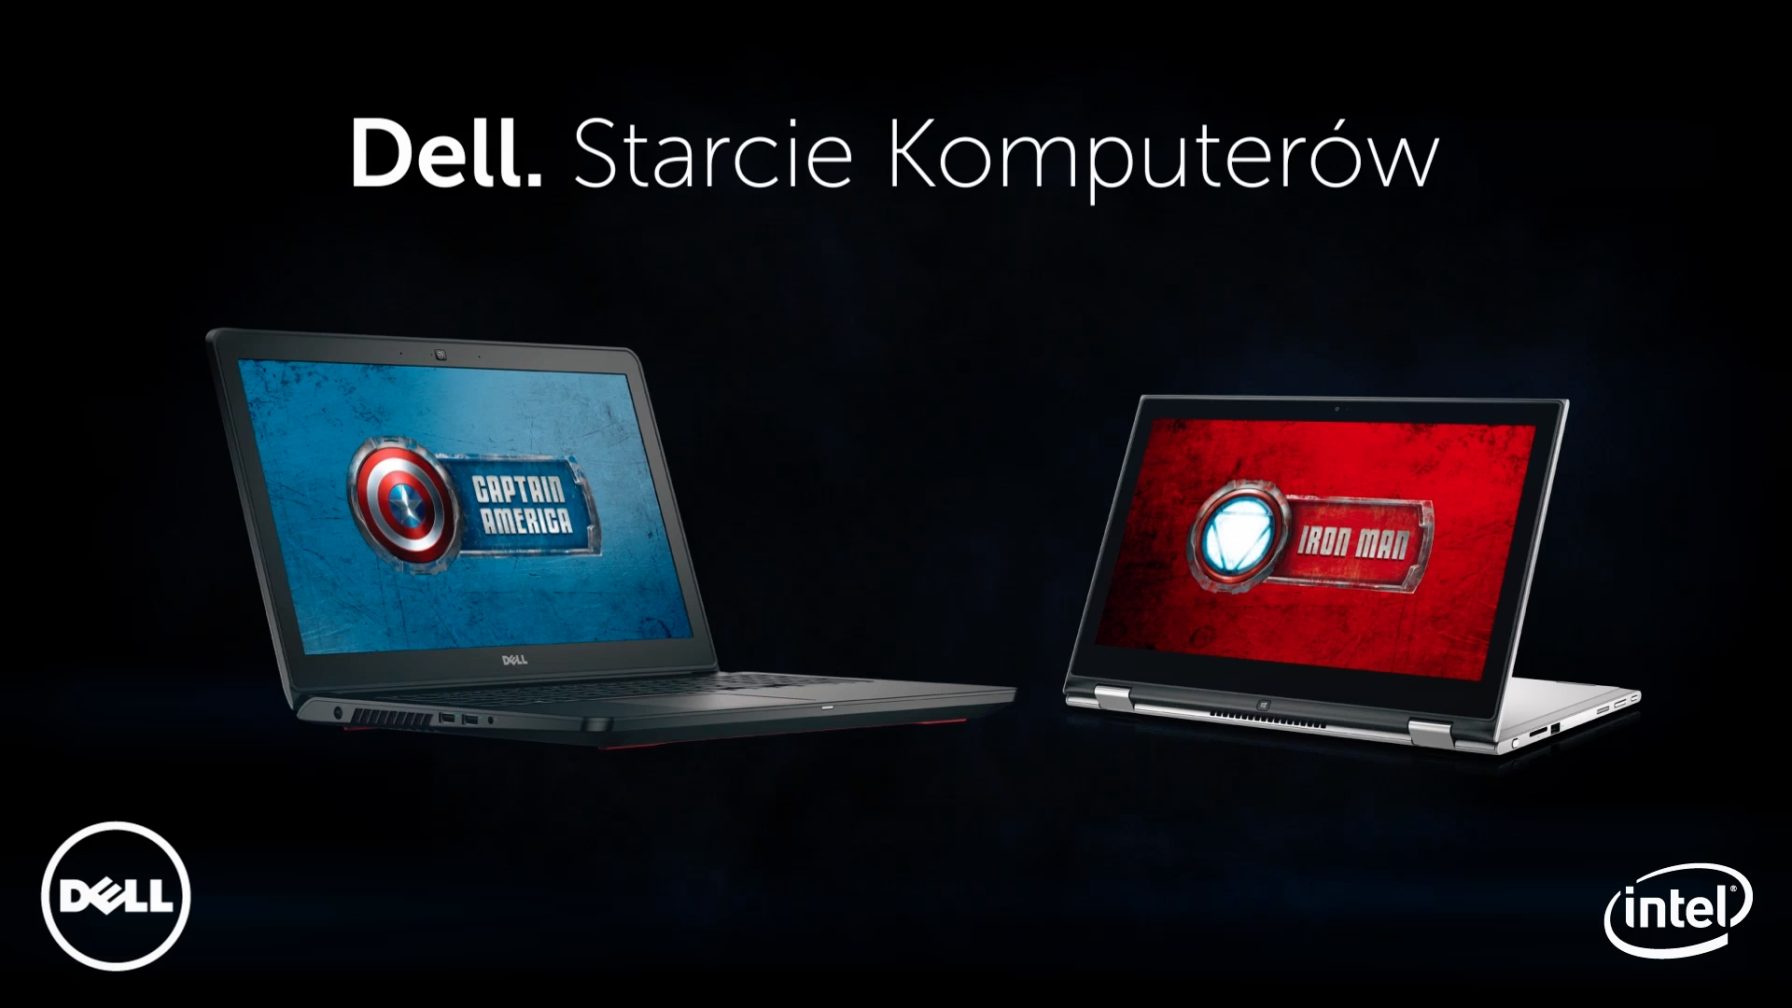 Dell. Starcie Komputerów